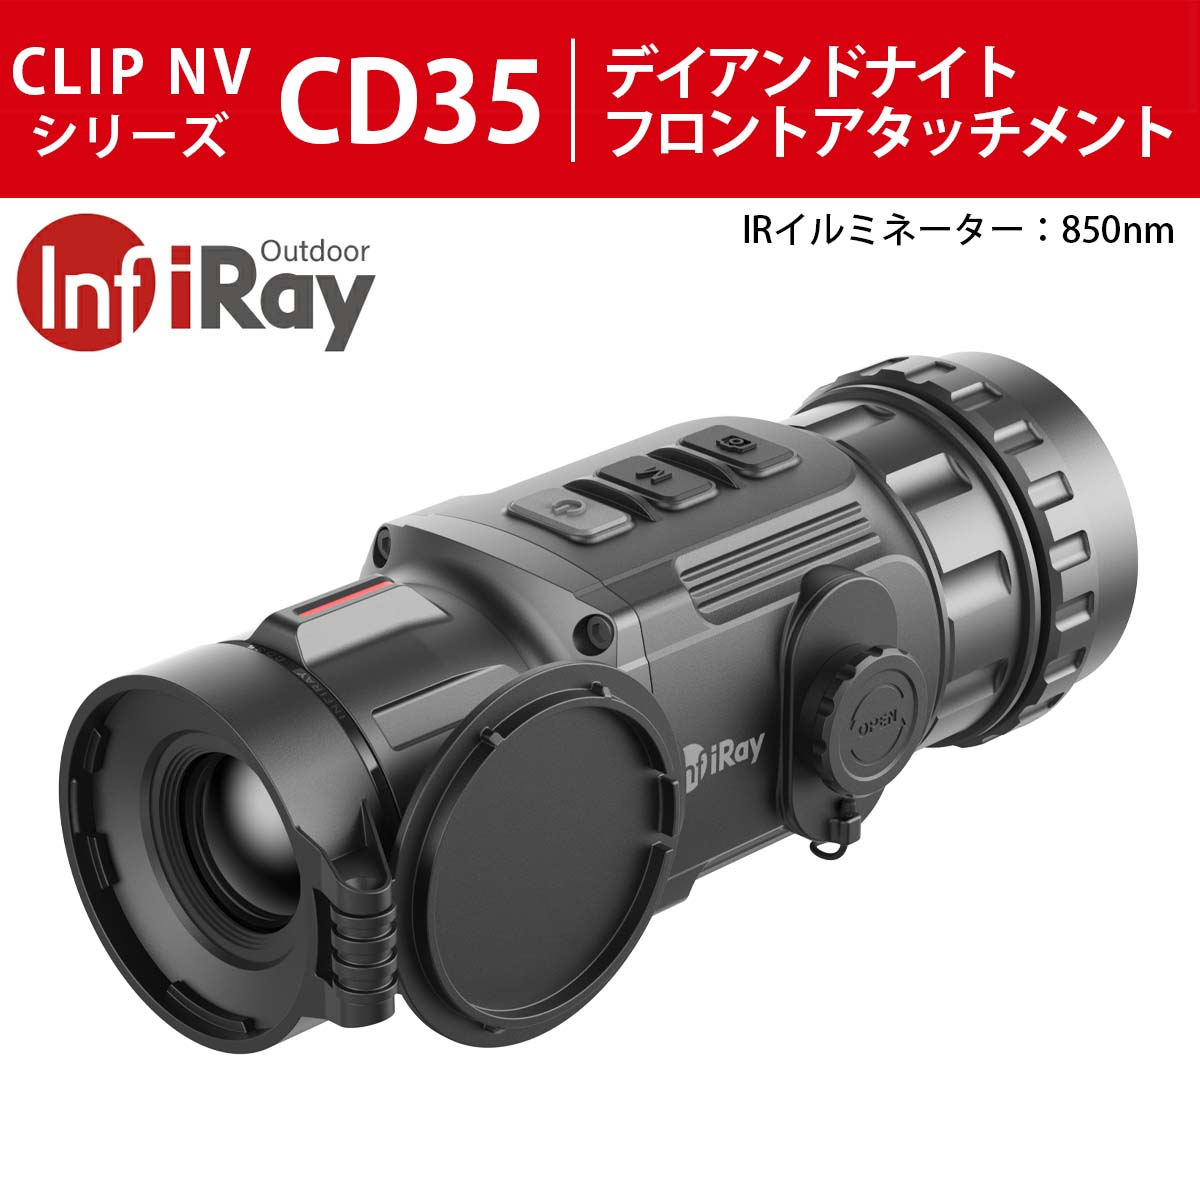 IRAY デイアンドナイトフロントアタッチメント CLIP NVシリーズ CD35(IRイルミネーター:850nm) 光学機器,暗視スコープ  タイムテクノロジー公式ショップ